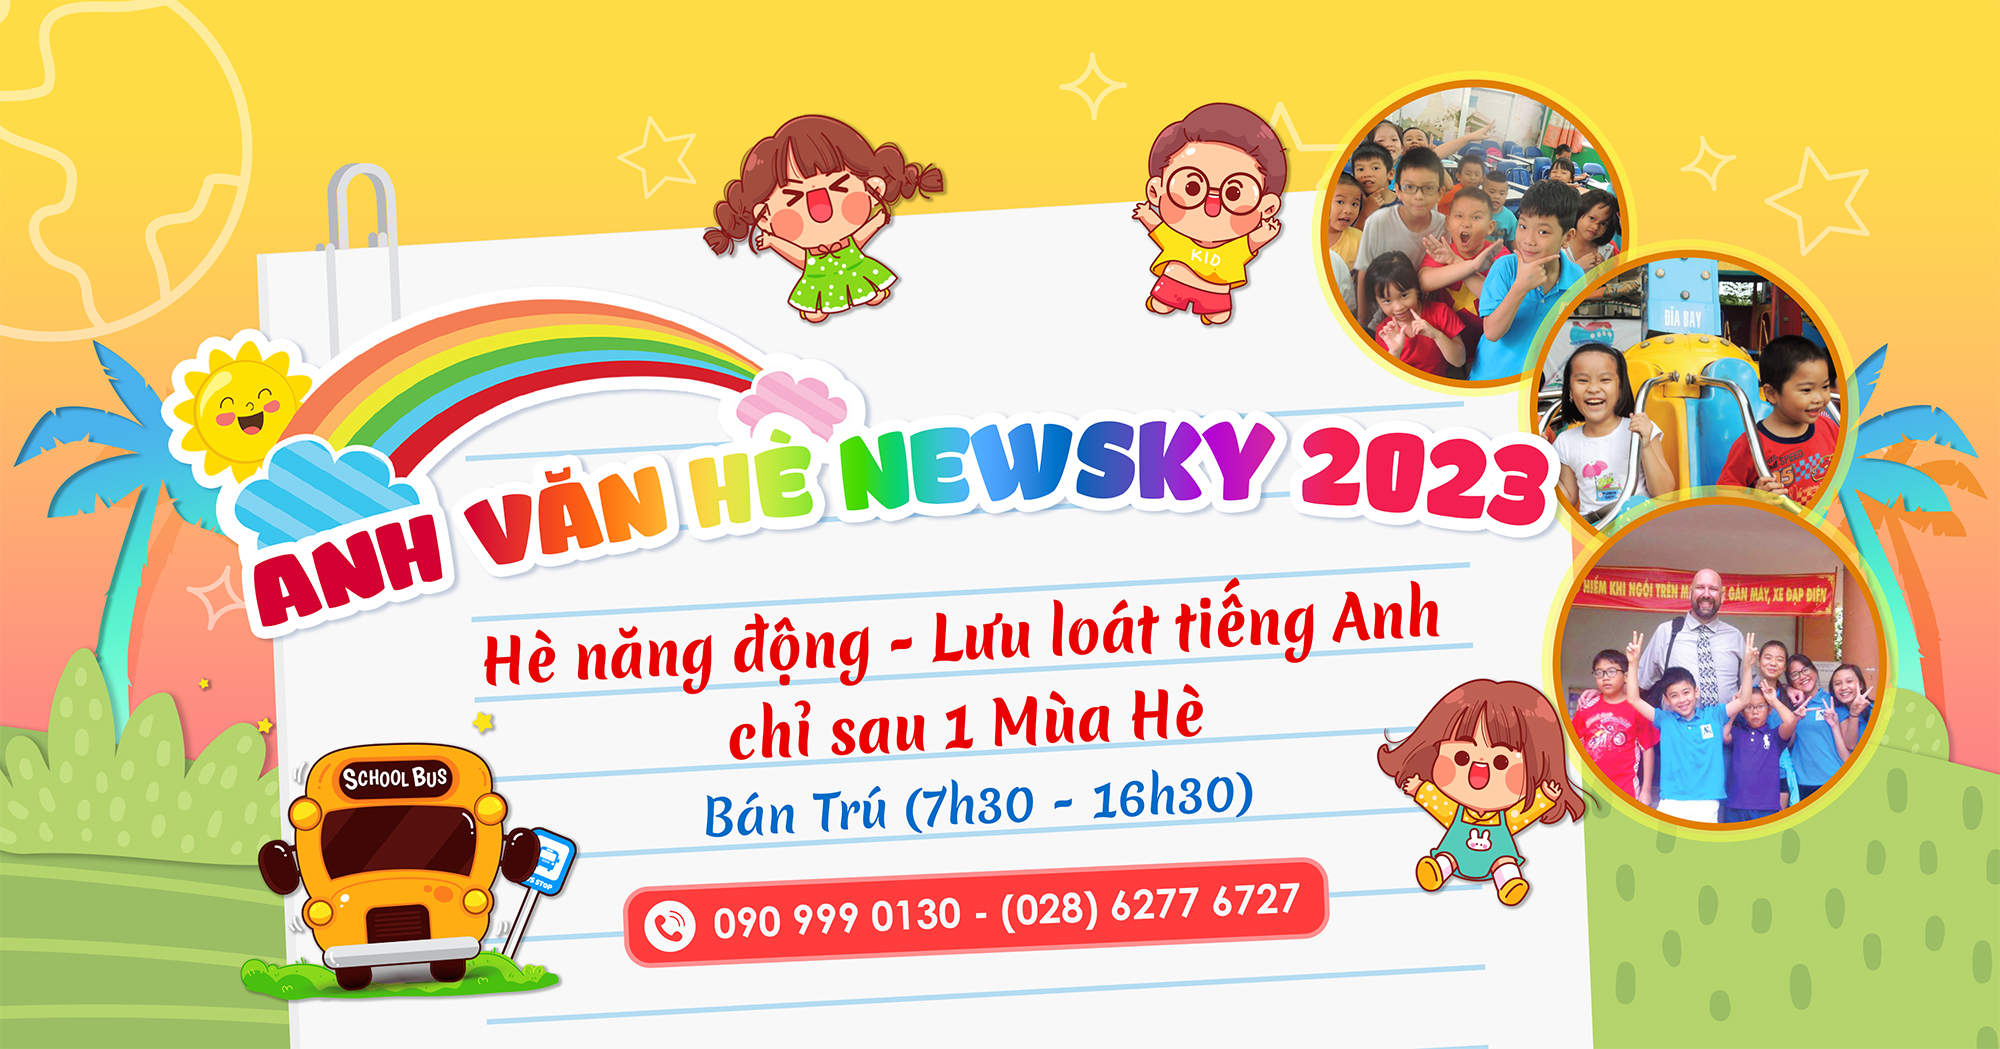 Popup Anh Văn Hè NewSky 2023